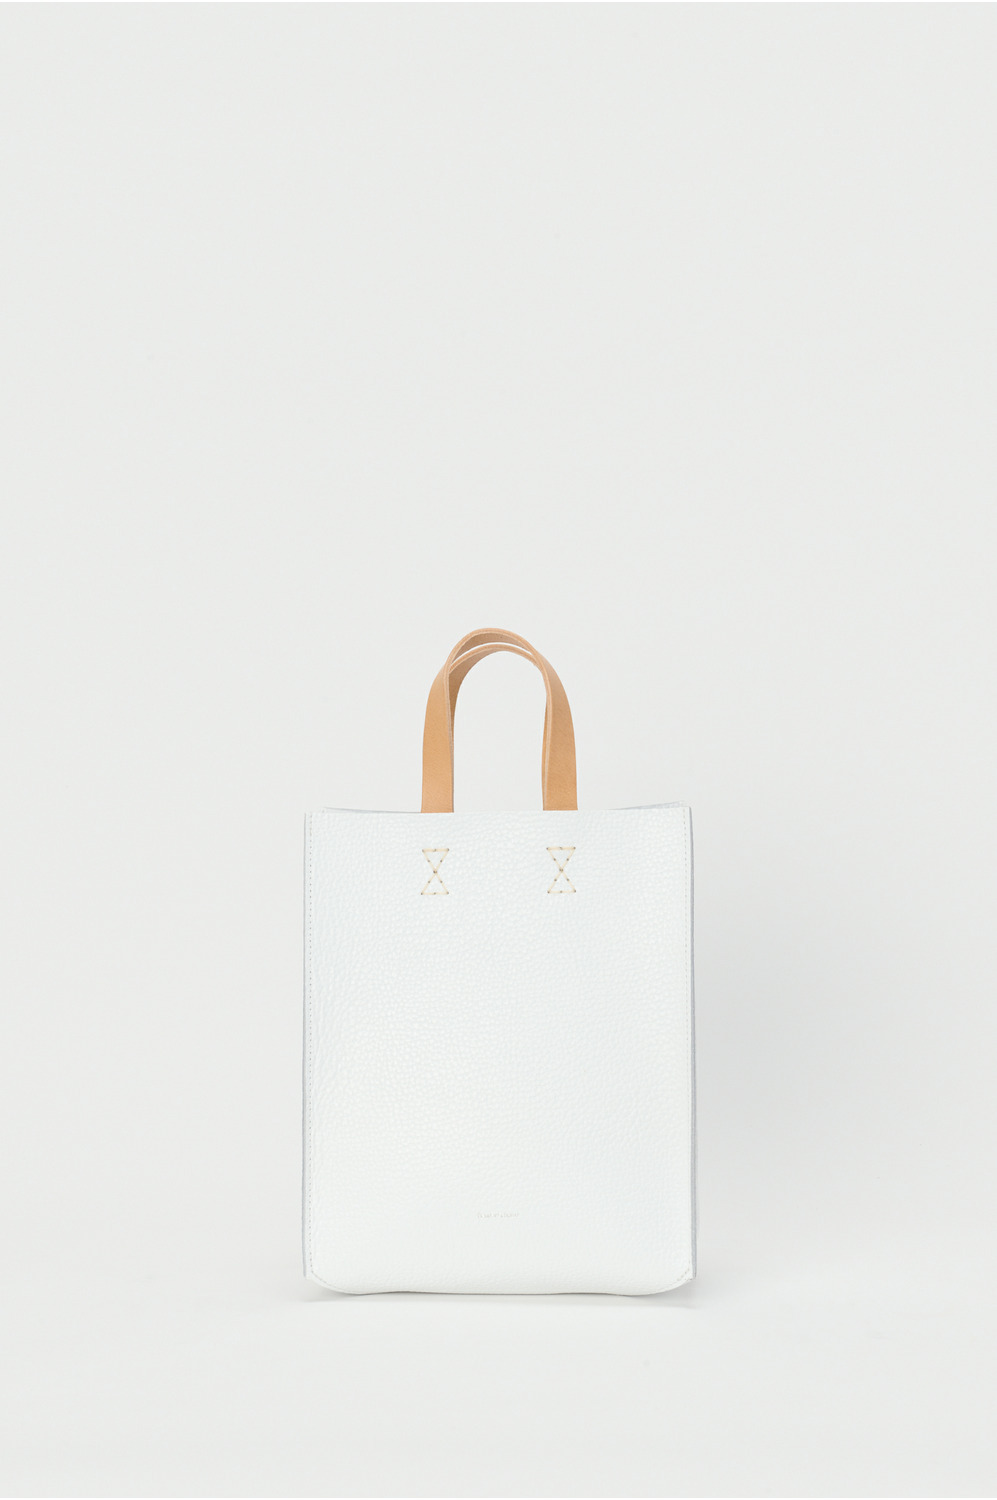 paper bag small 詳細画像 white 1